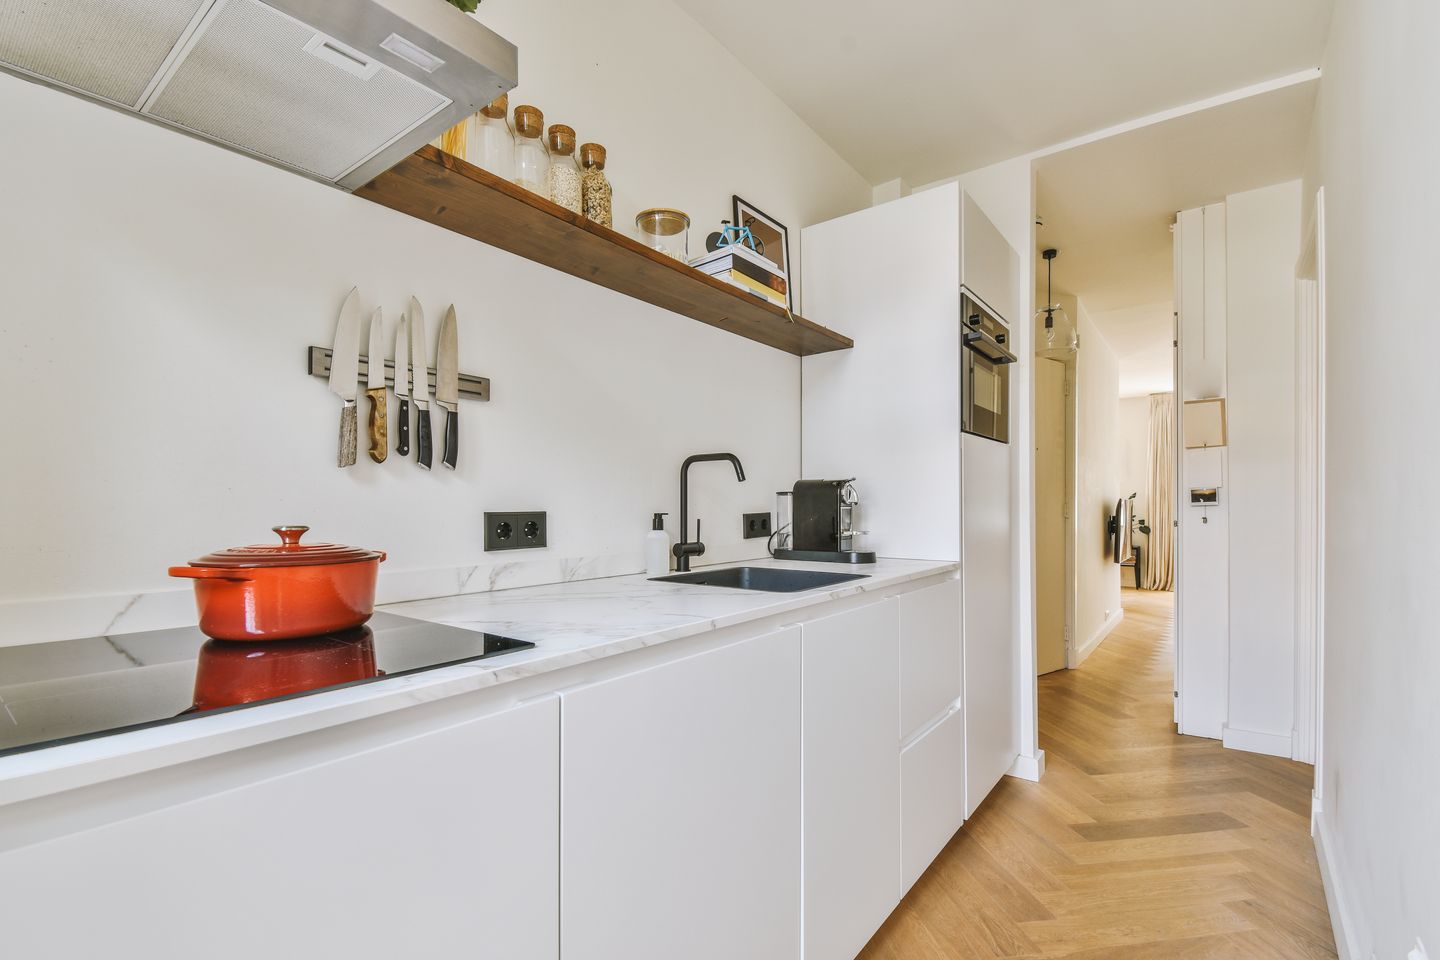 Membangun dapur minimalis bisa memaksimalkan ruangan yang kamu miliki.